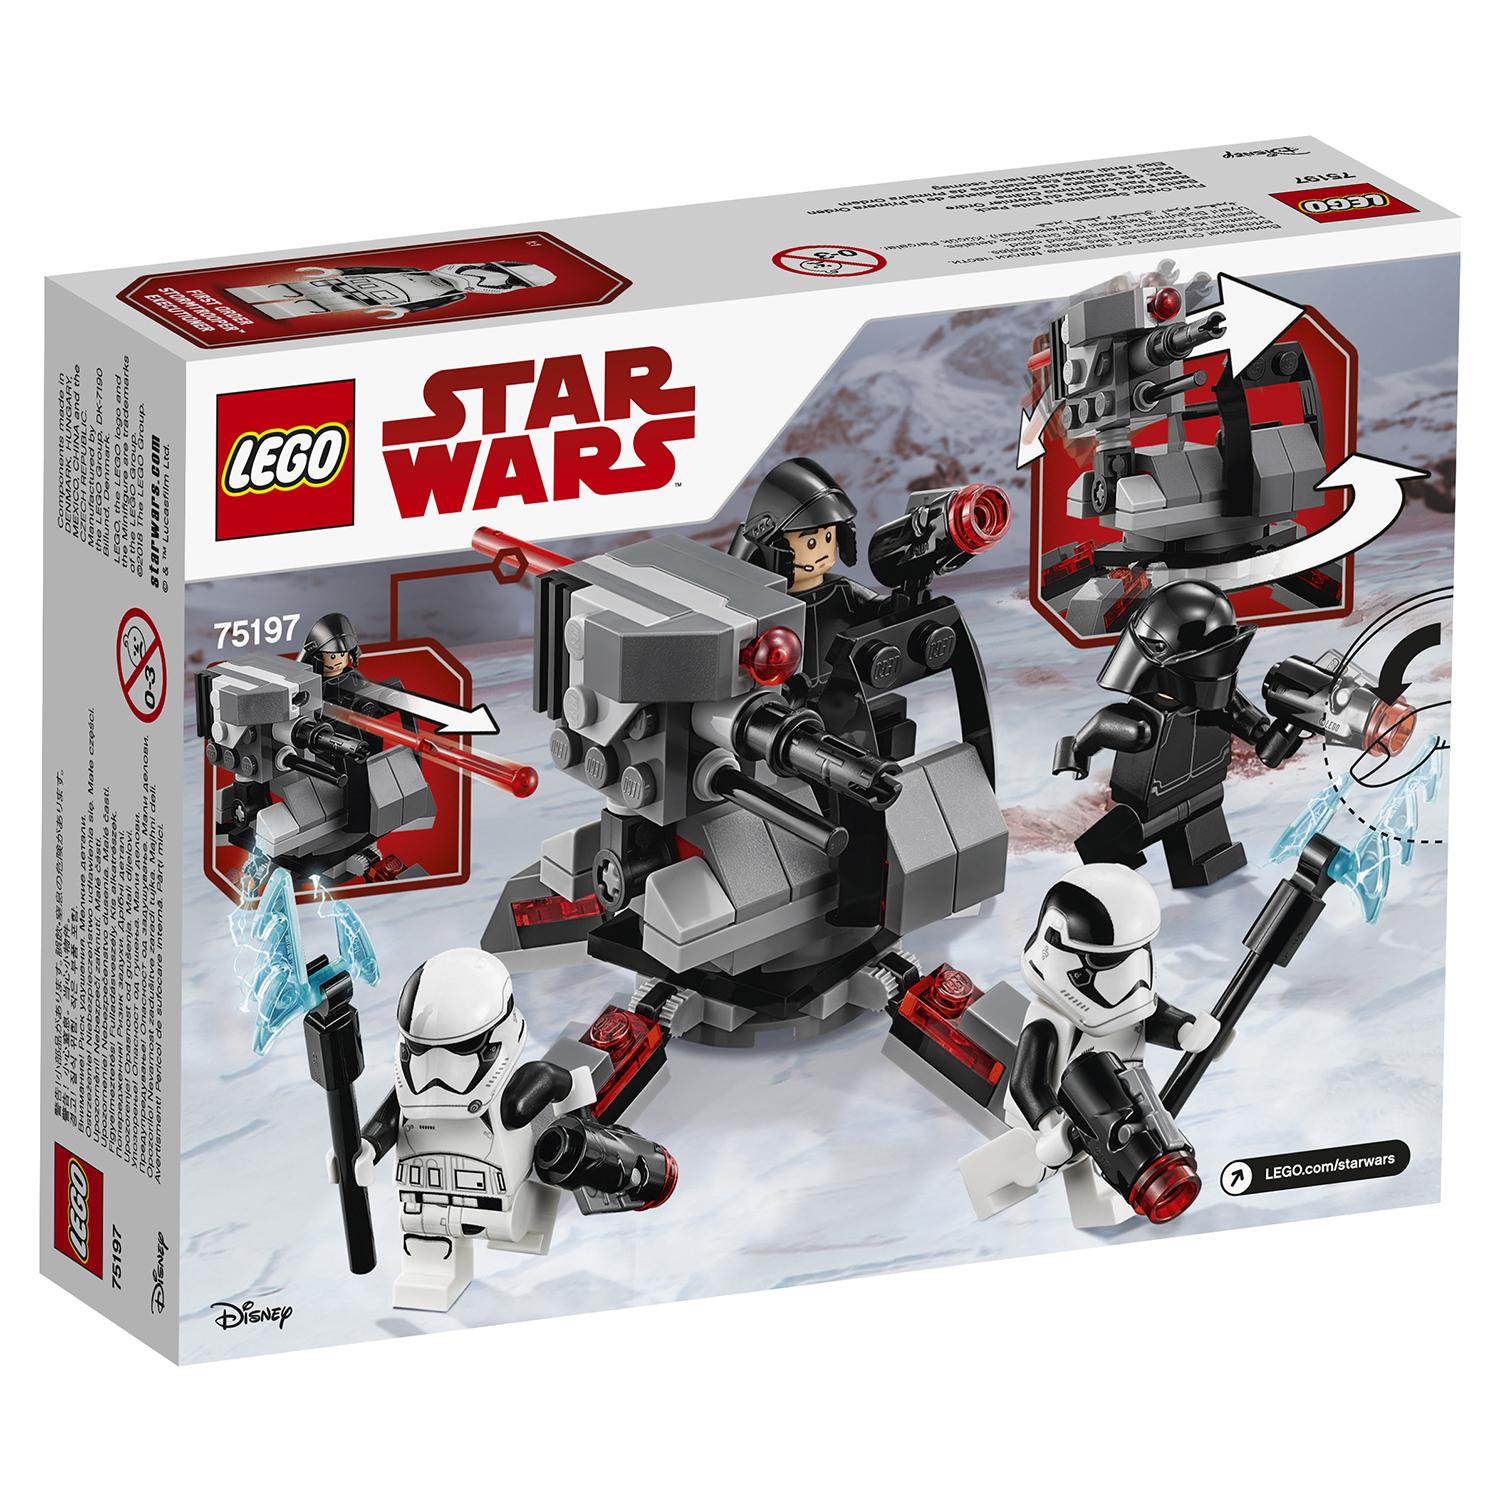 Lego Star Wars 75197 Боевой набор специалистов Первого Ордена